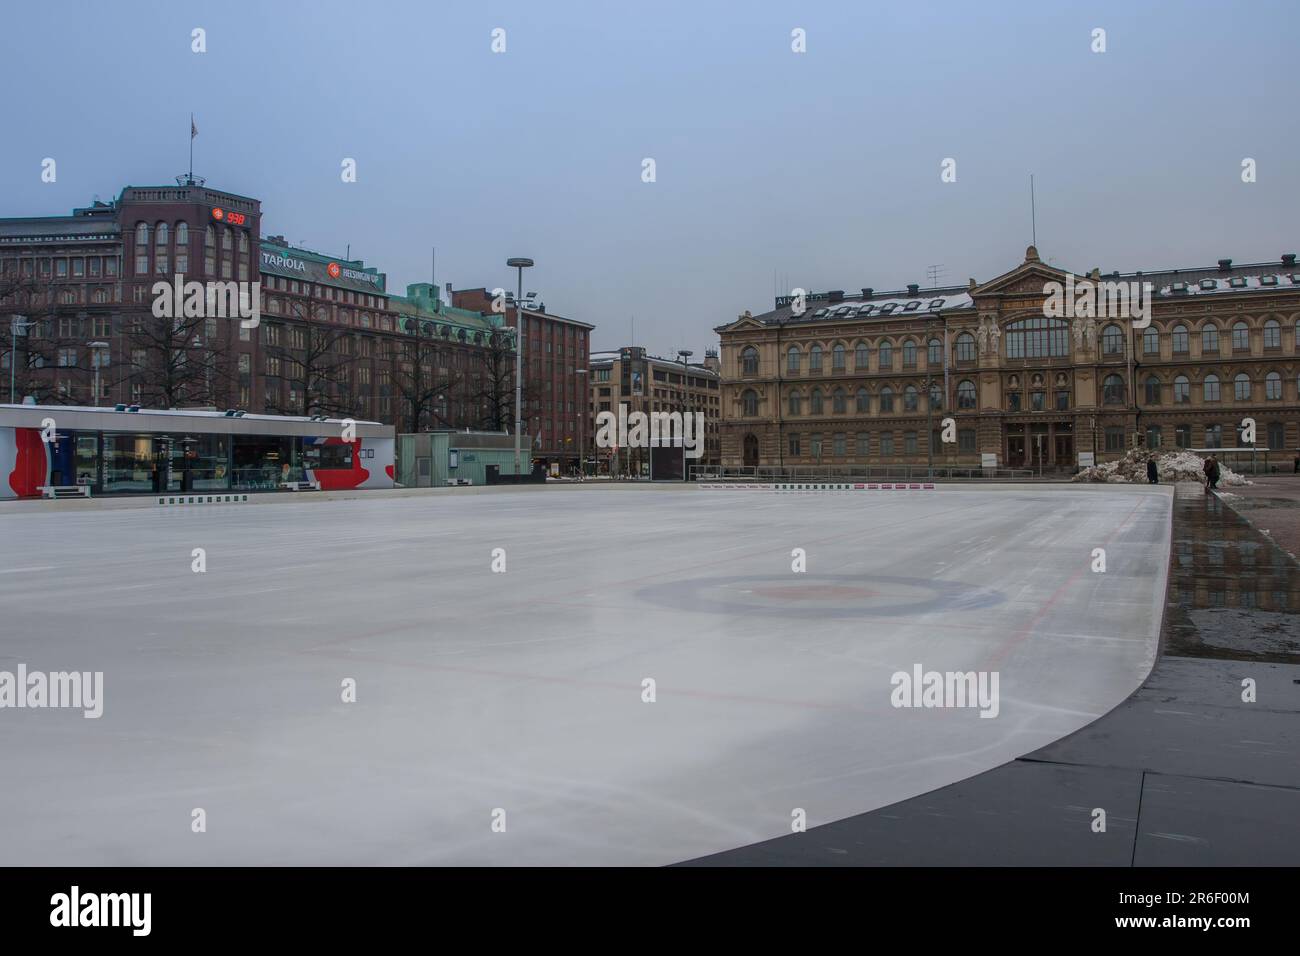 Pista di pattinaggio di fronte all'Ateneum, Galleria Nazionale finlandese, piazza Rautatientori, Helsinki, Finlandia. Foto Stock